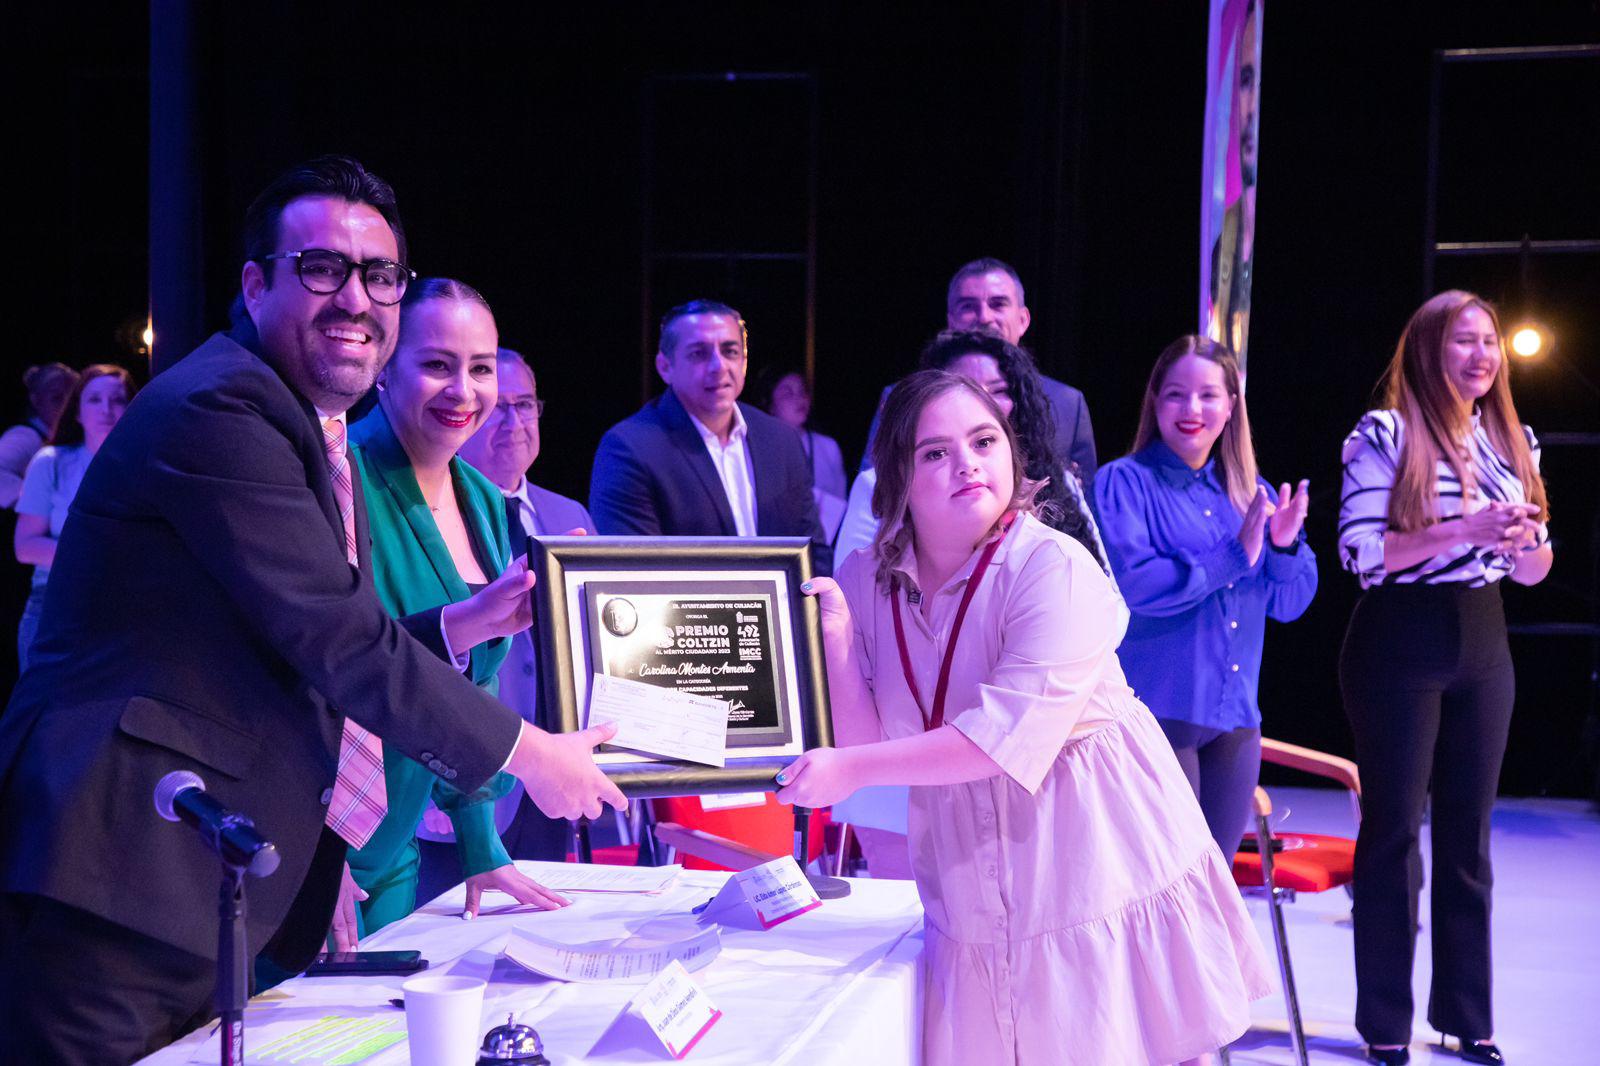 $!Premian a culiacanenses destacados con Premio Coltzin al Mérito Ciudadano 2023